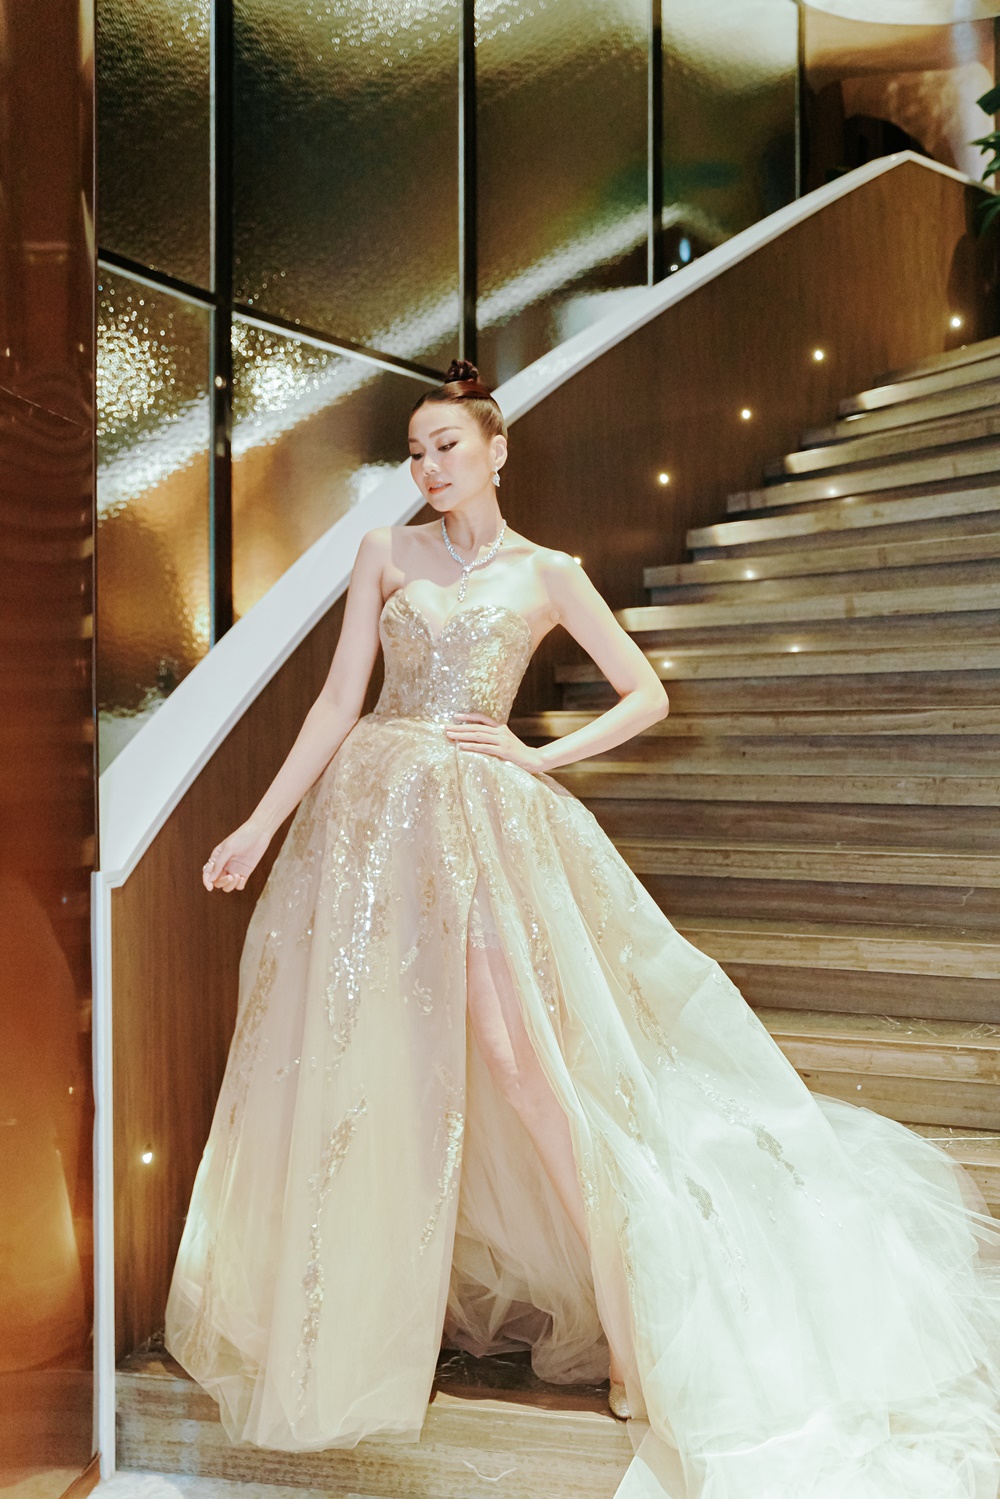 Thanh Hằng xuất hiện lỗng lẫy tựa công chúa trong mẫu váy của NTK đình đám thế giới Elie Saab - ảnh 4